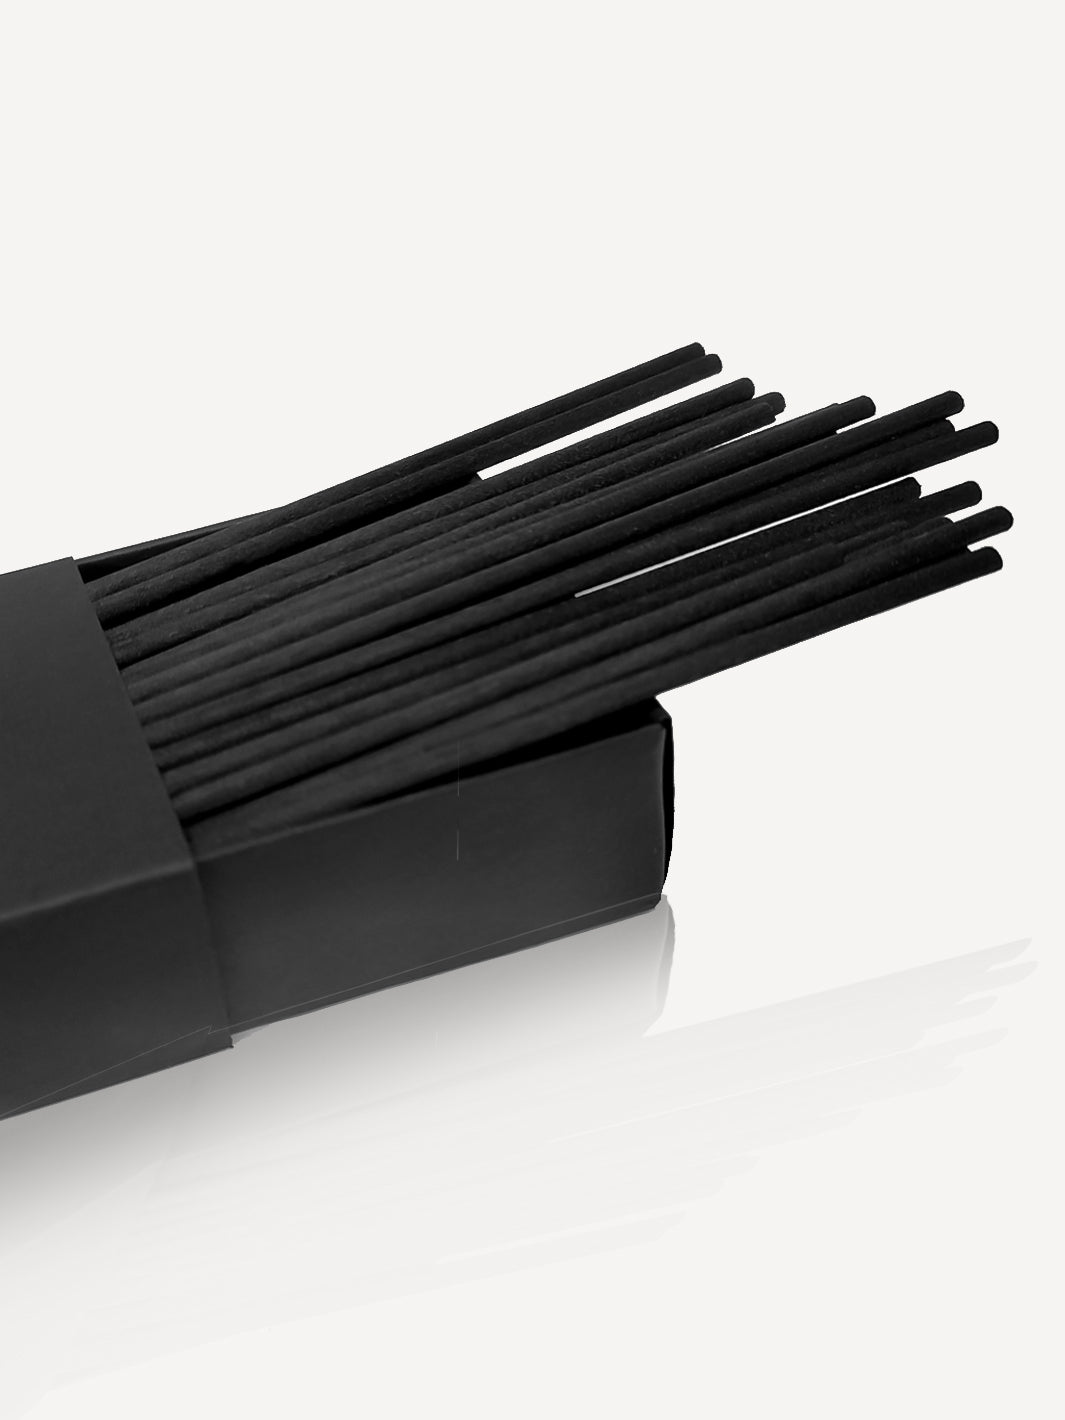 Black Fibre Reeds In a Box